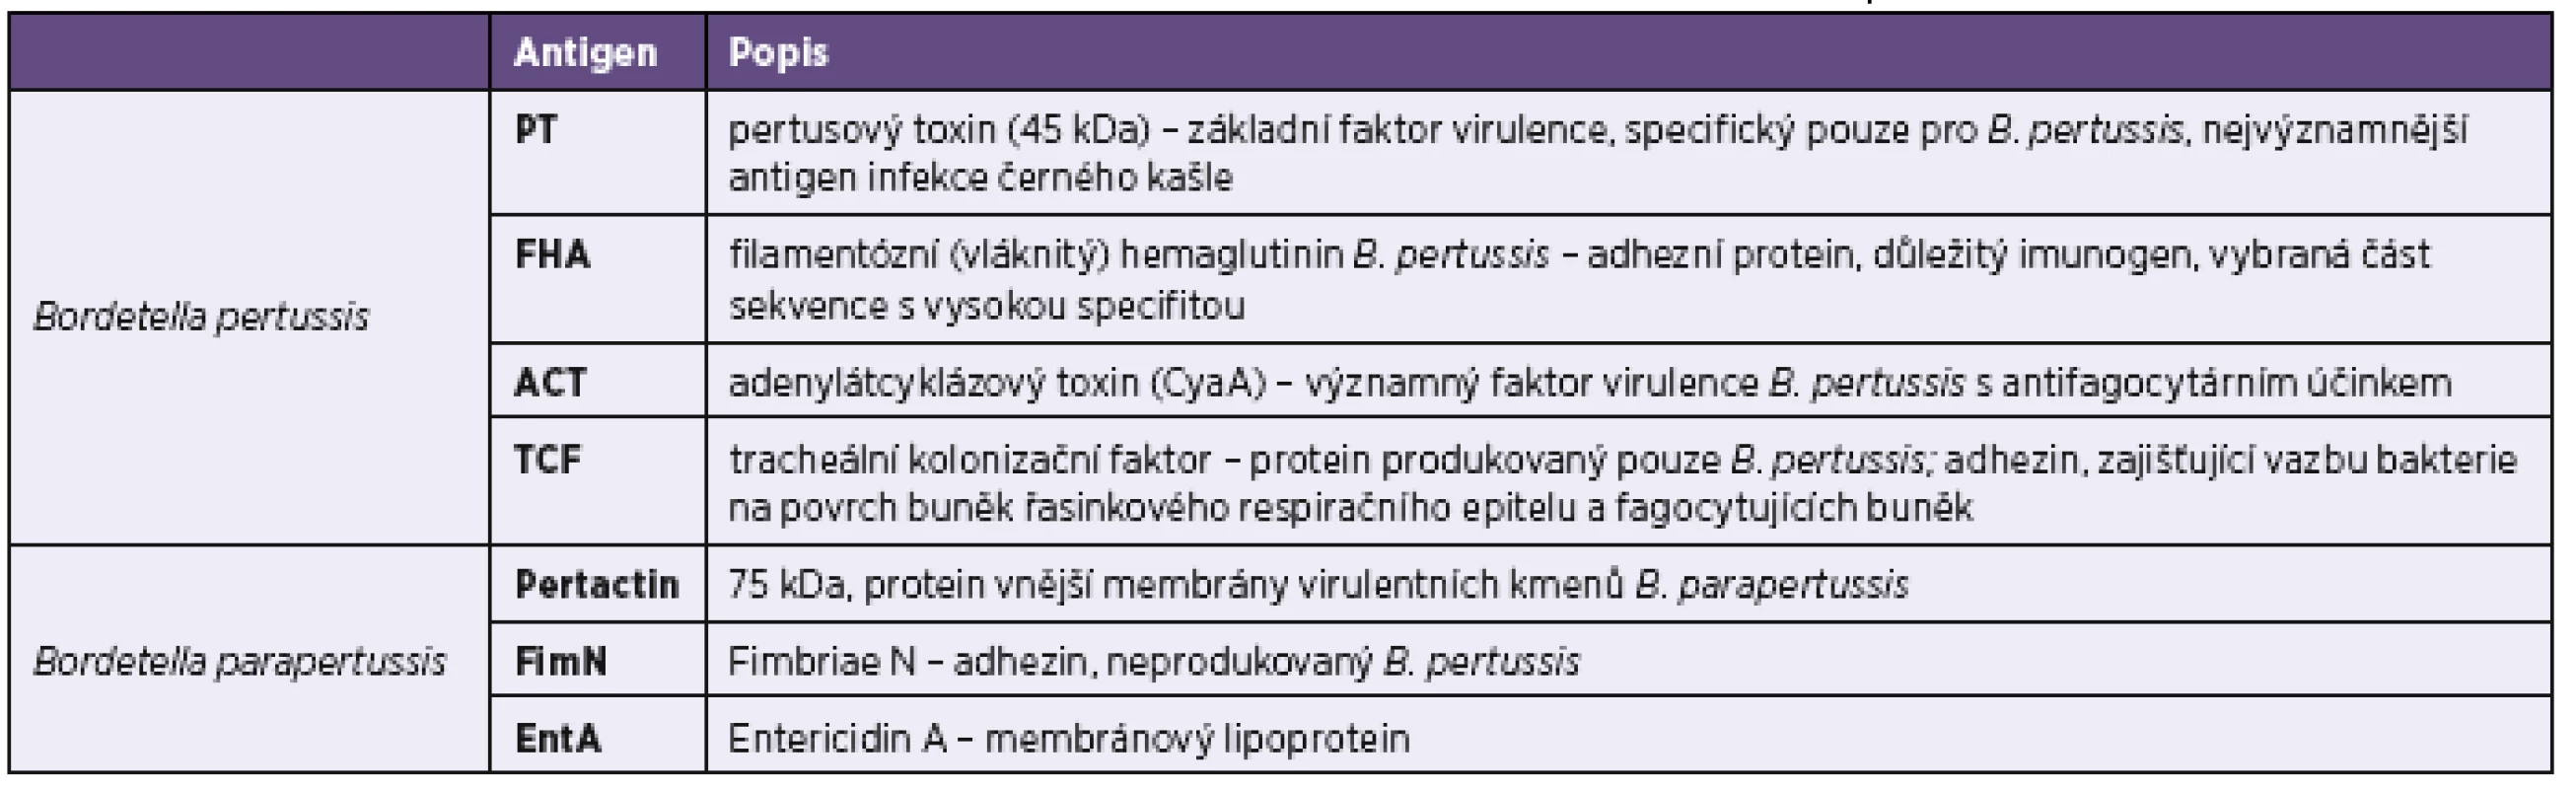 Charakteristika specifických antigenů bordetel použitých v imunoblotovacích soupravách firmy Test Line
Table 1. Characteristics of specific &lt;i&gt;Bordetella pertussis&lt;/i&gt; antigens used in the Test Line immunoblot kits